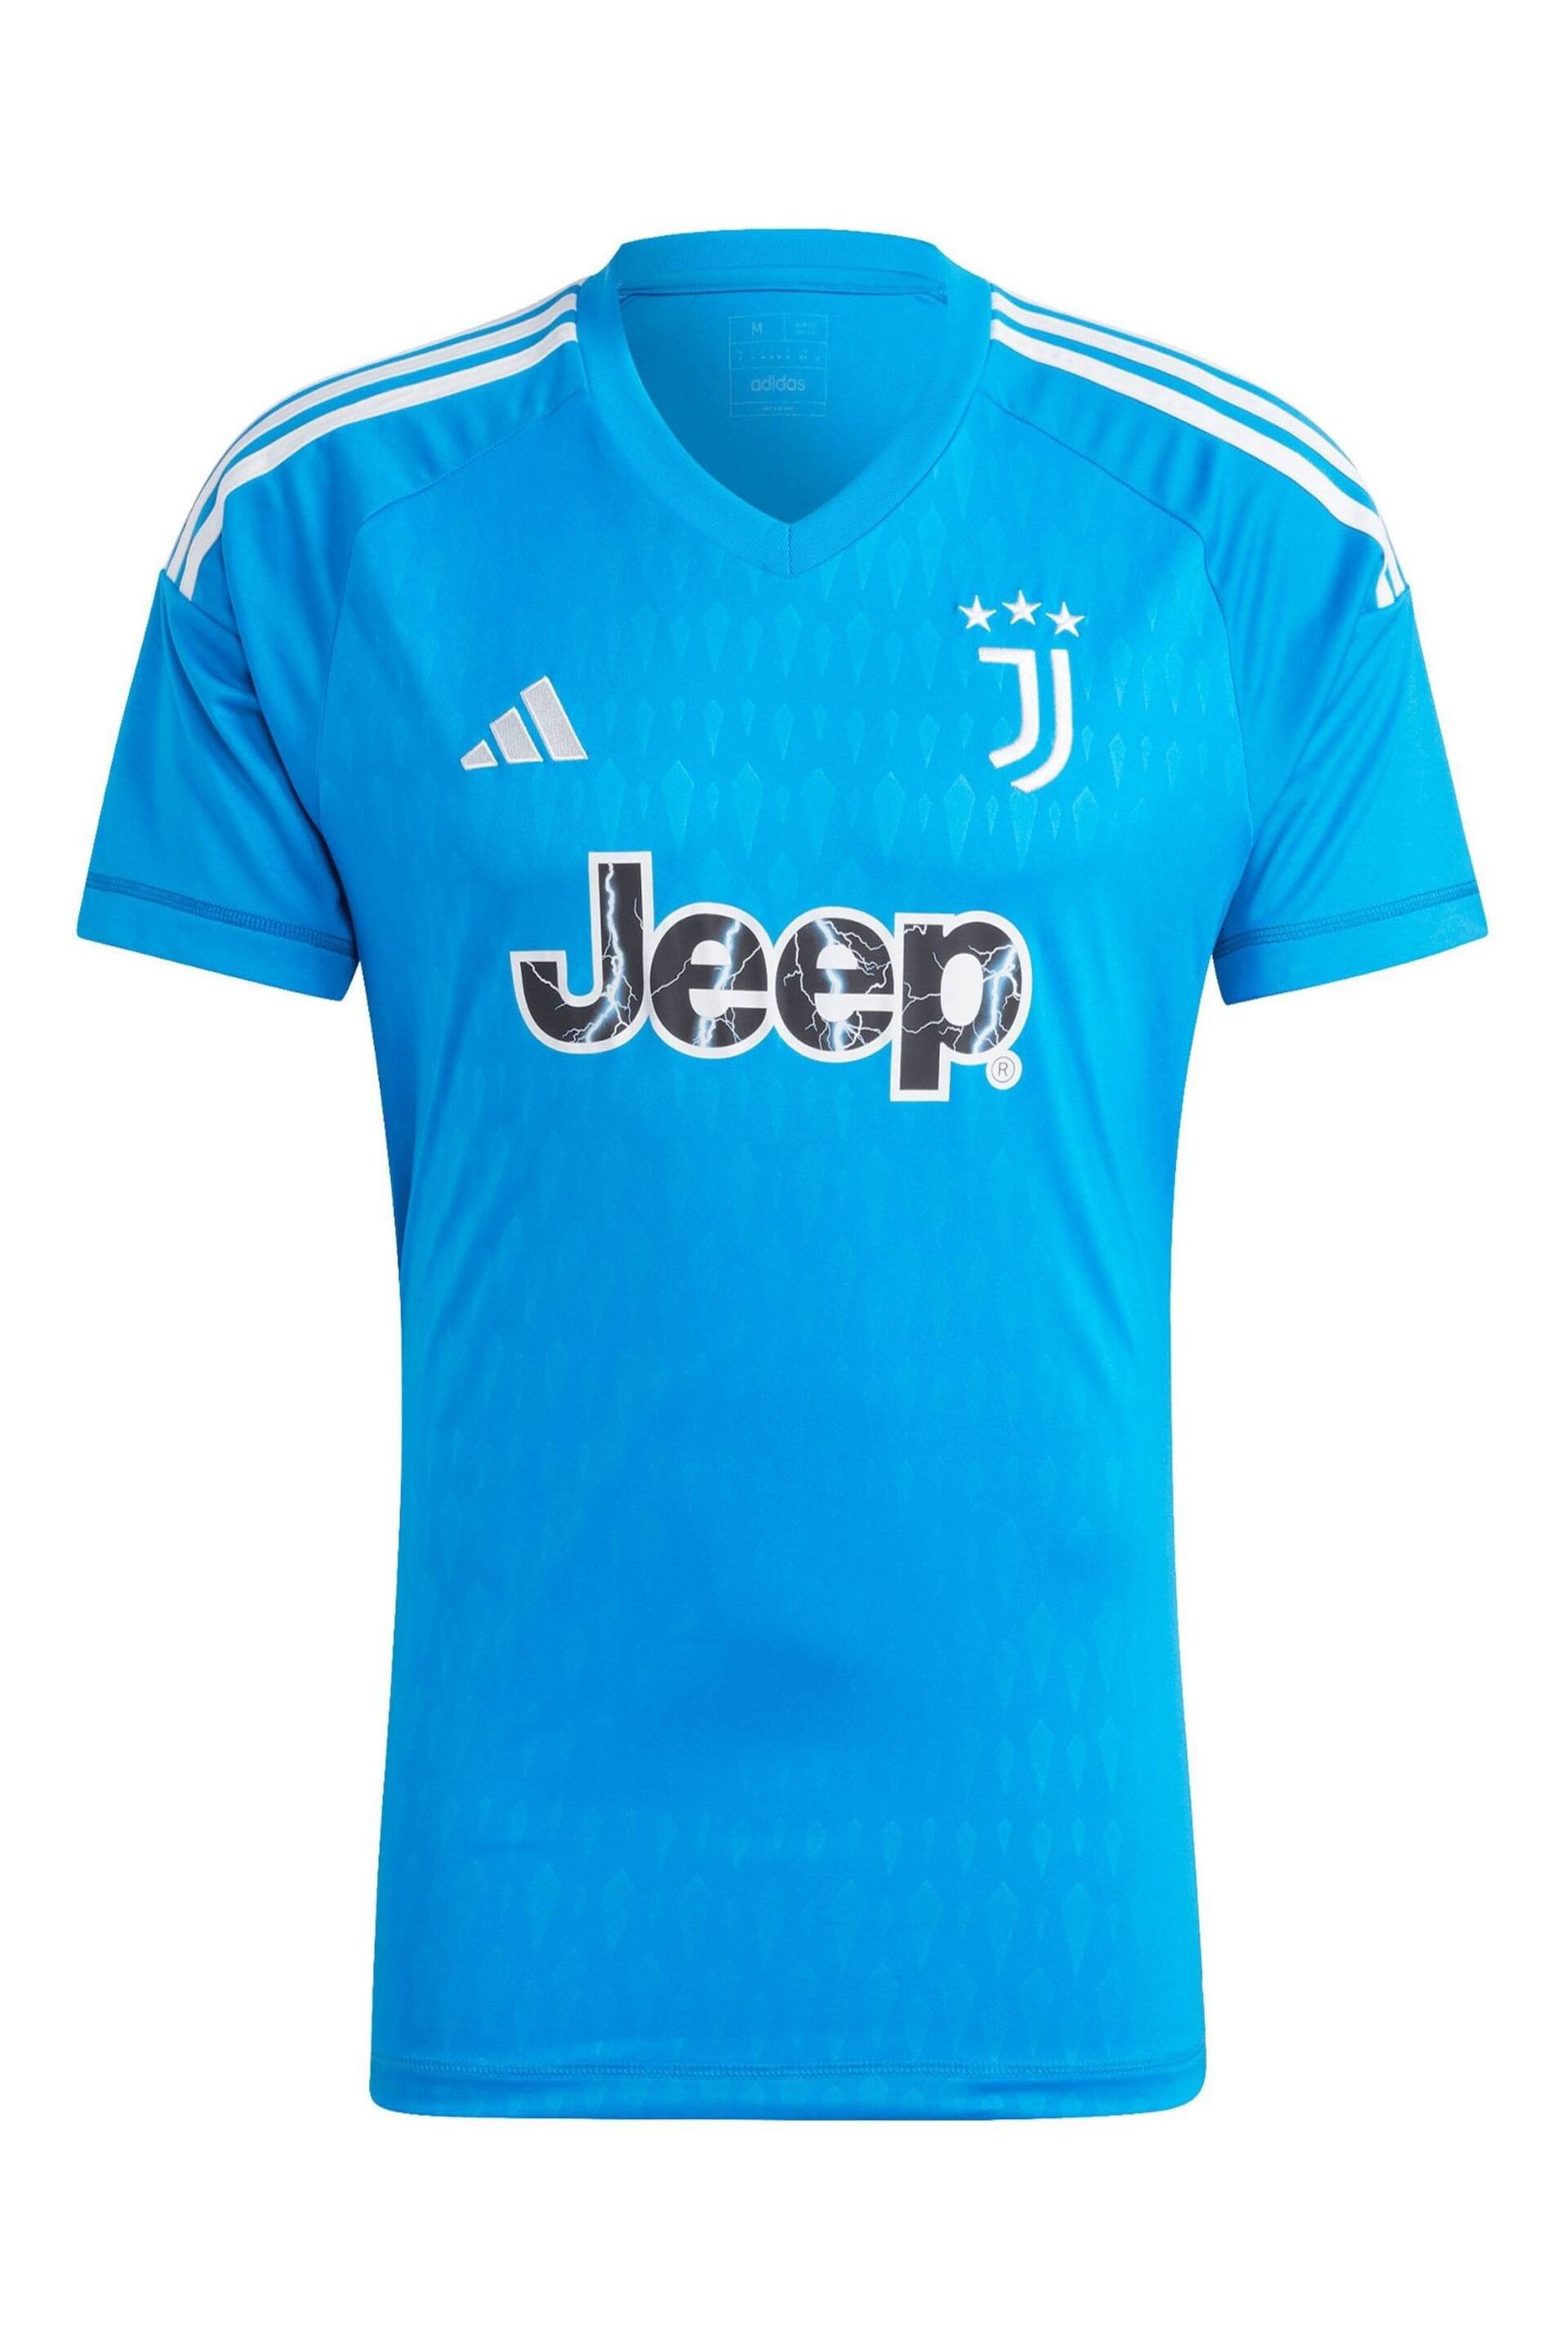 adidas Blue Juventus Goalkeeper Shirt Kids - Image 2 of 2